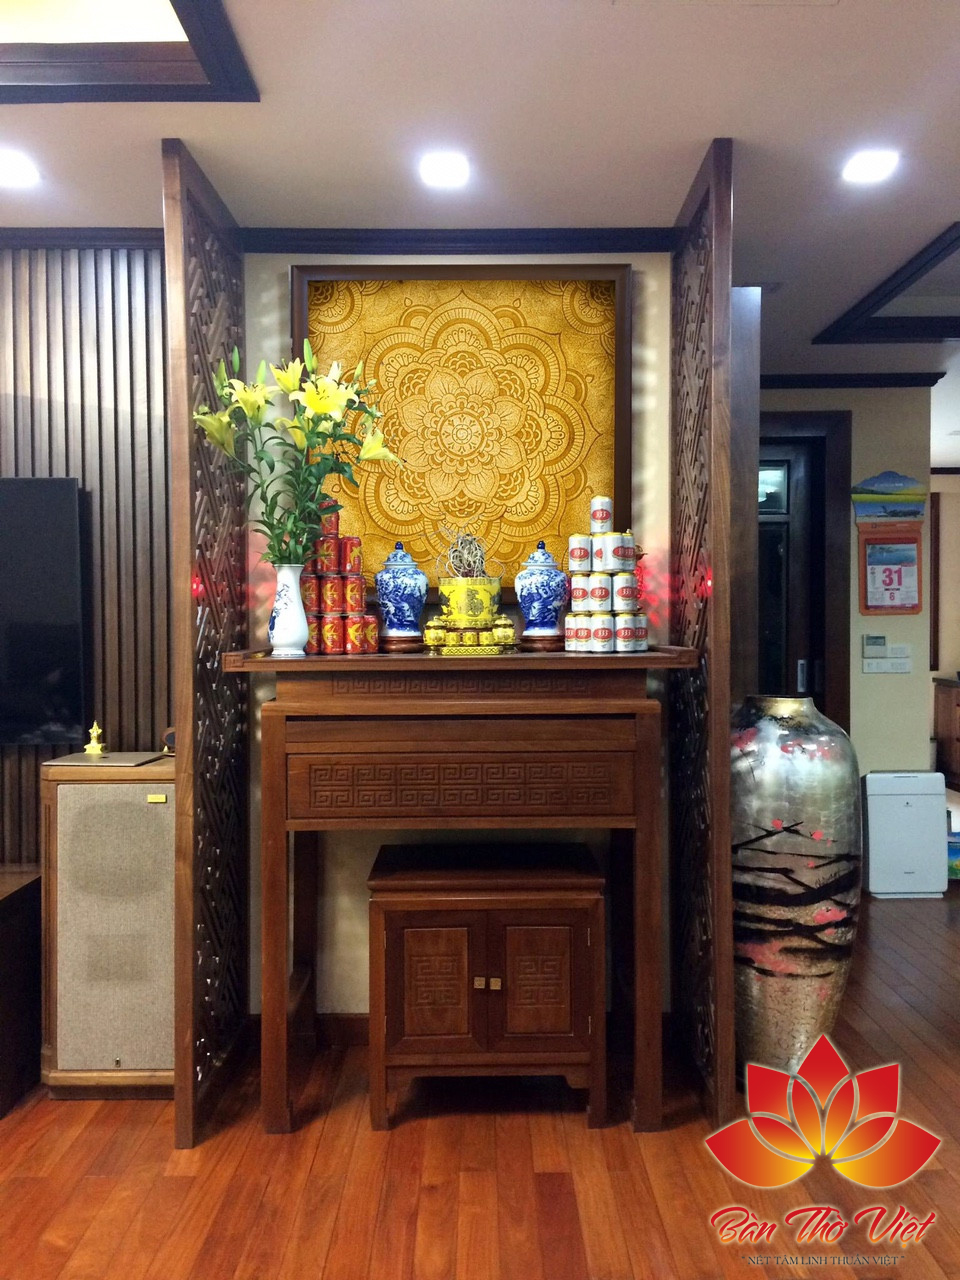 Phòng thờ ở Cầu Giấy do Bàn thờ Việt cung cấp bao gồm nhiều dịch vụ liên quan, đa dạng sự lựa chọn dành cho khách hàng